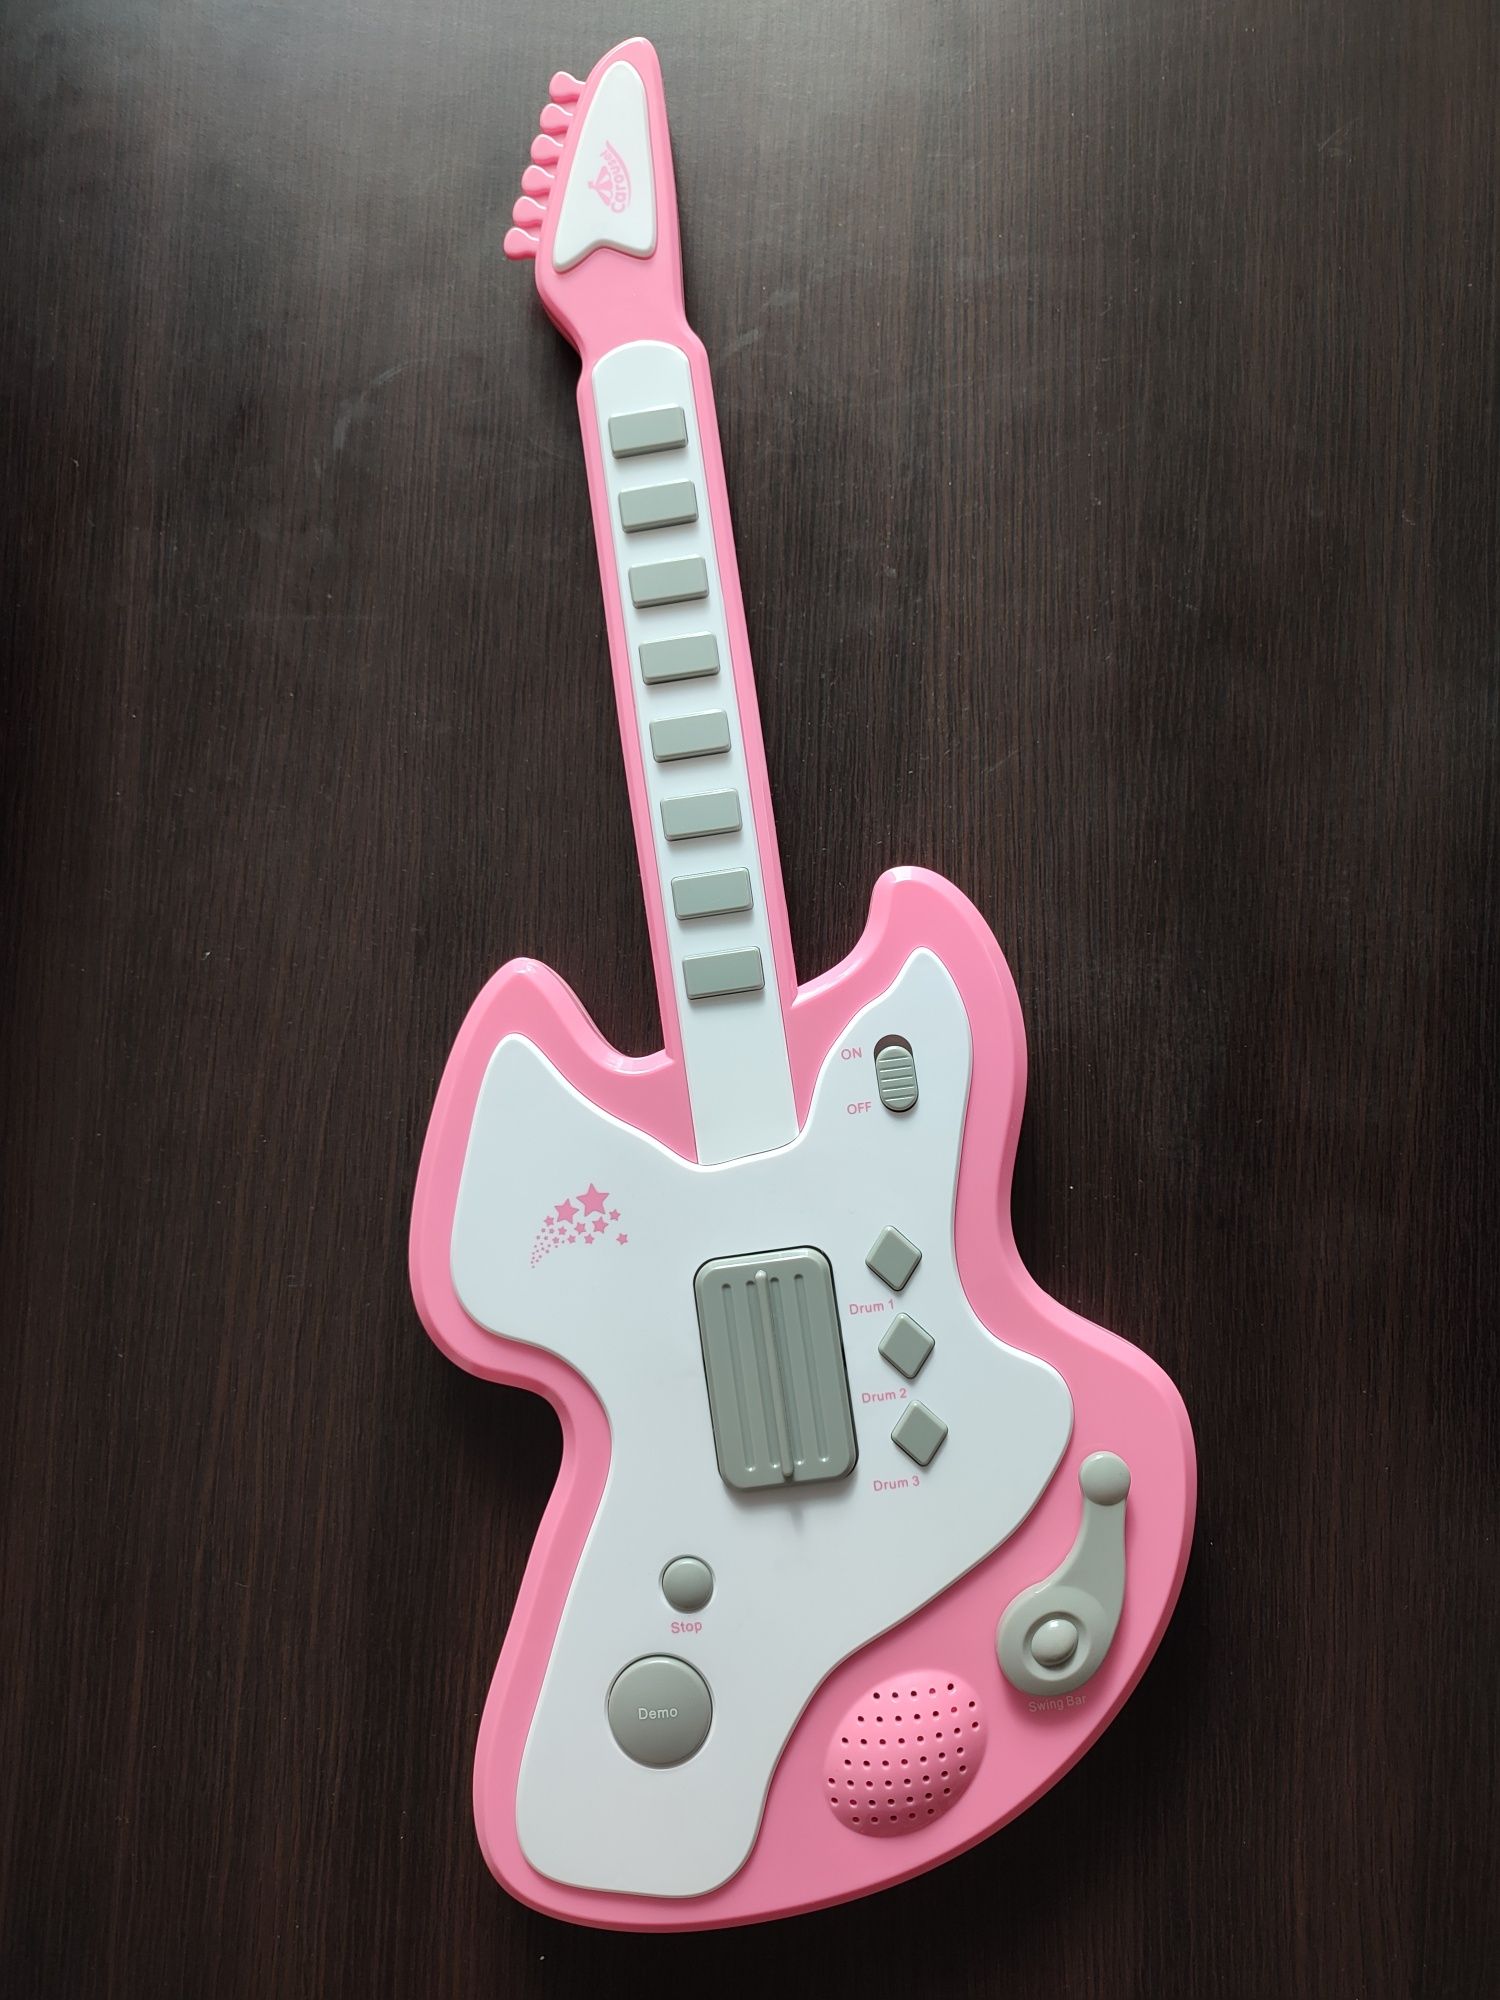 gitara grająca (58 cm) dla dziecka bez śladów użytkowania, na baterie